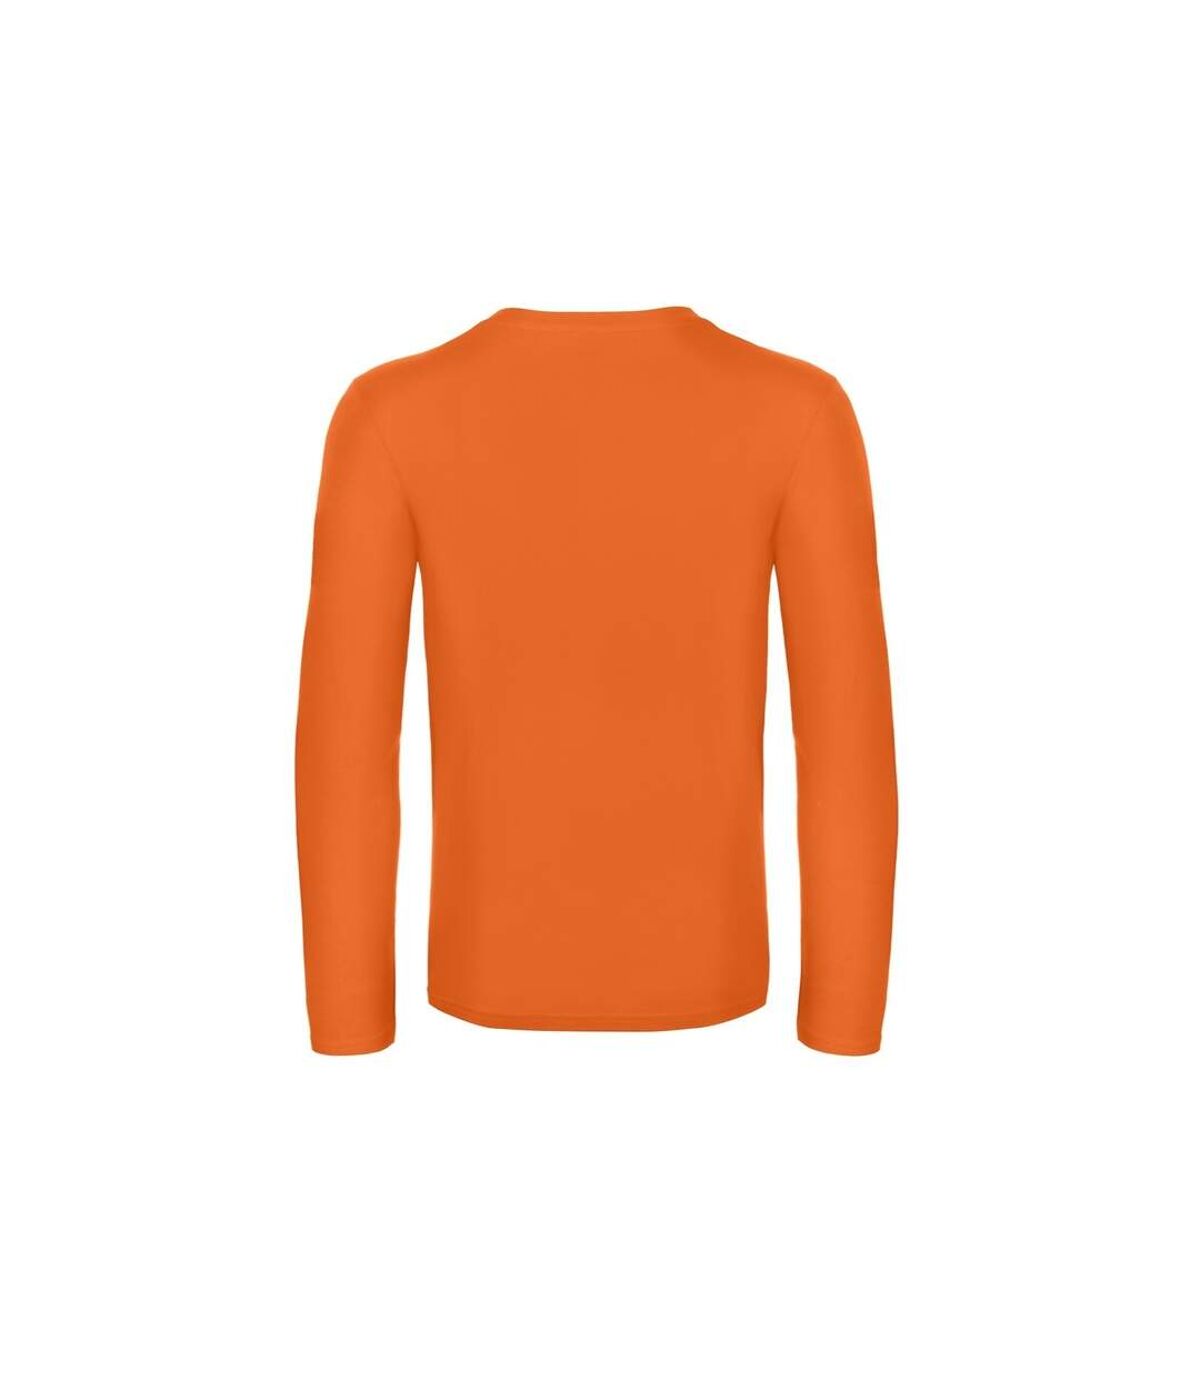 B&C - T-shirt #E190 - Homme (Orange) - UTRW6530